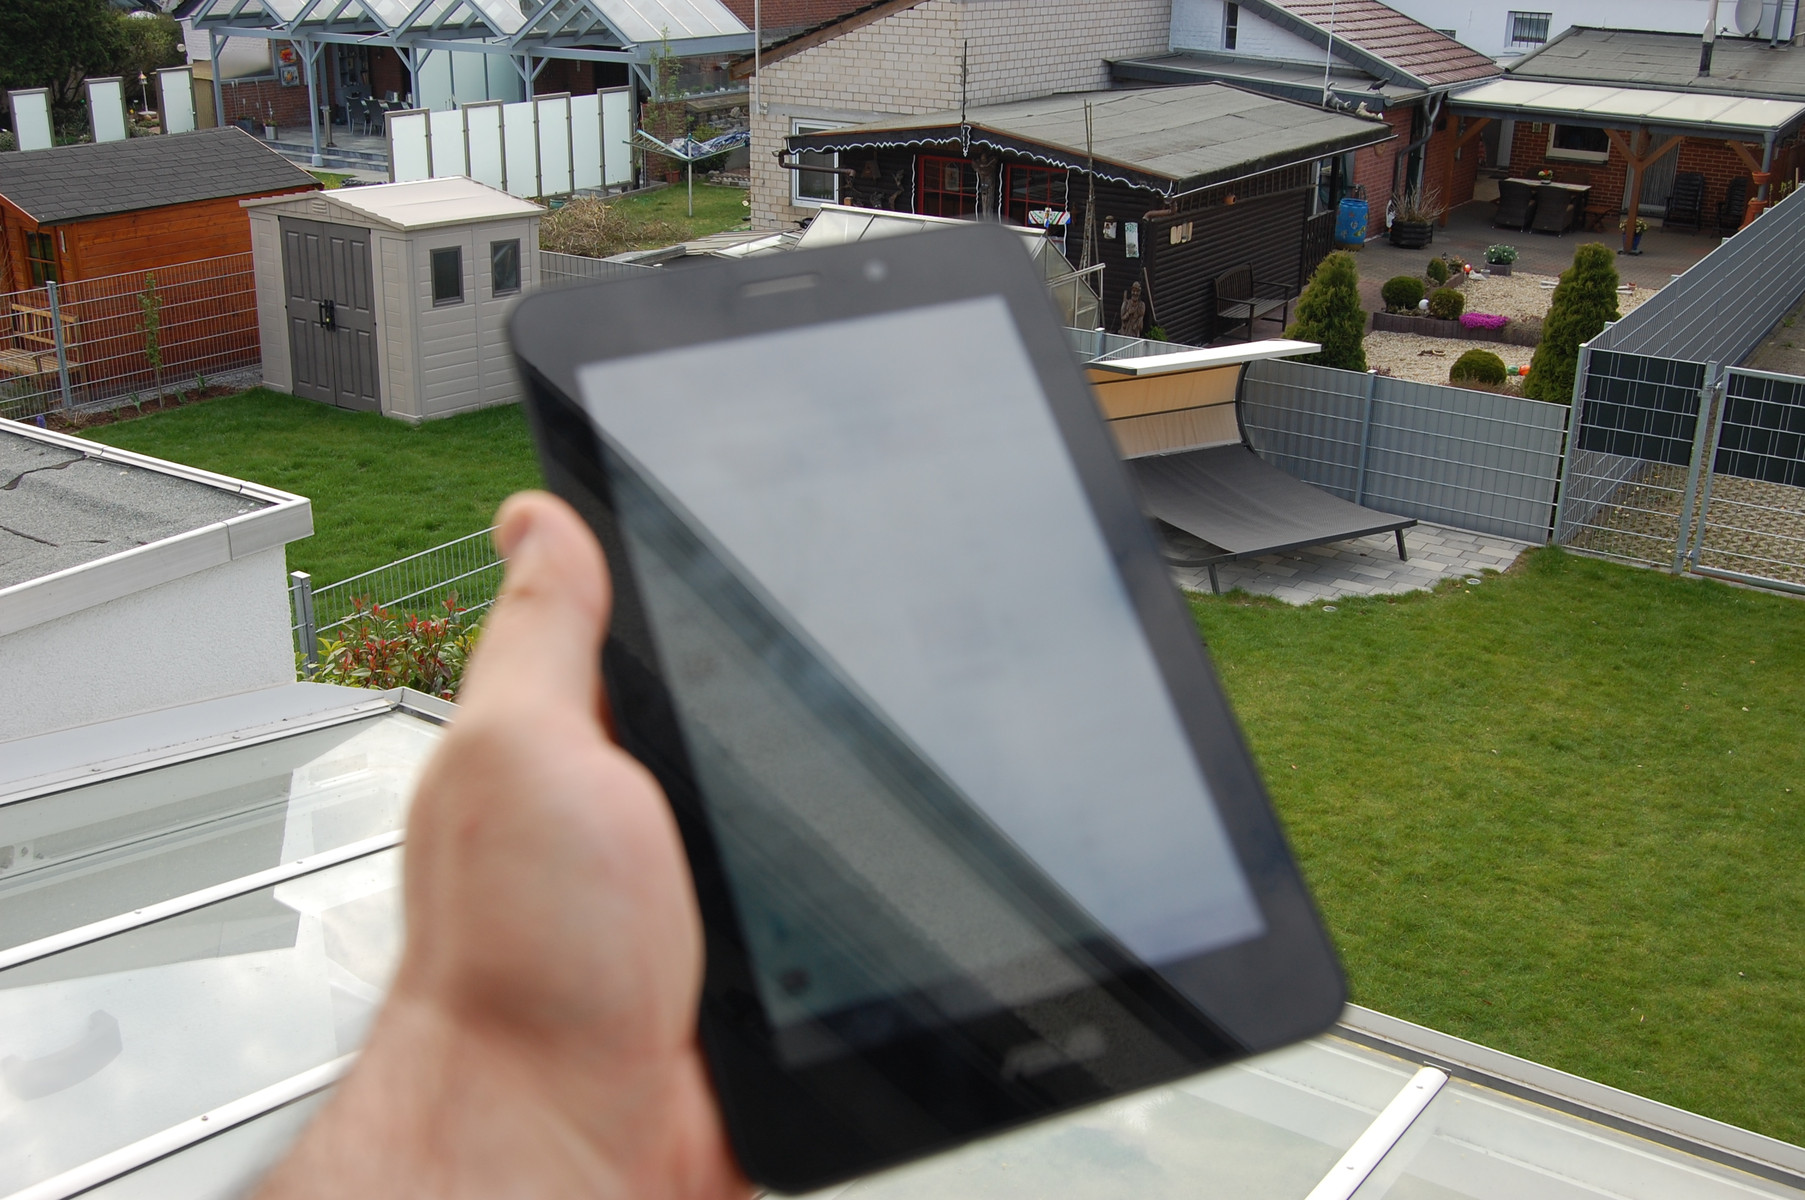 Asus Fonepad: Smartphone với màn hình lớn 7 inch 8